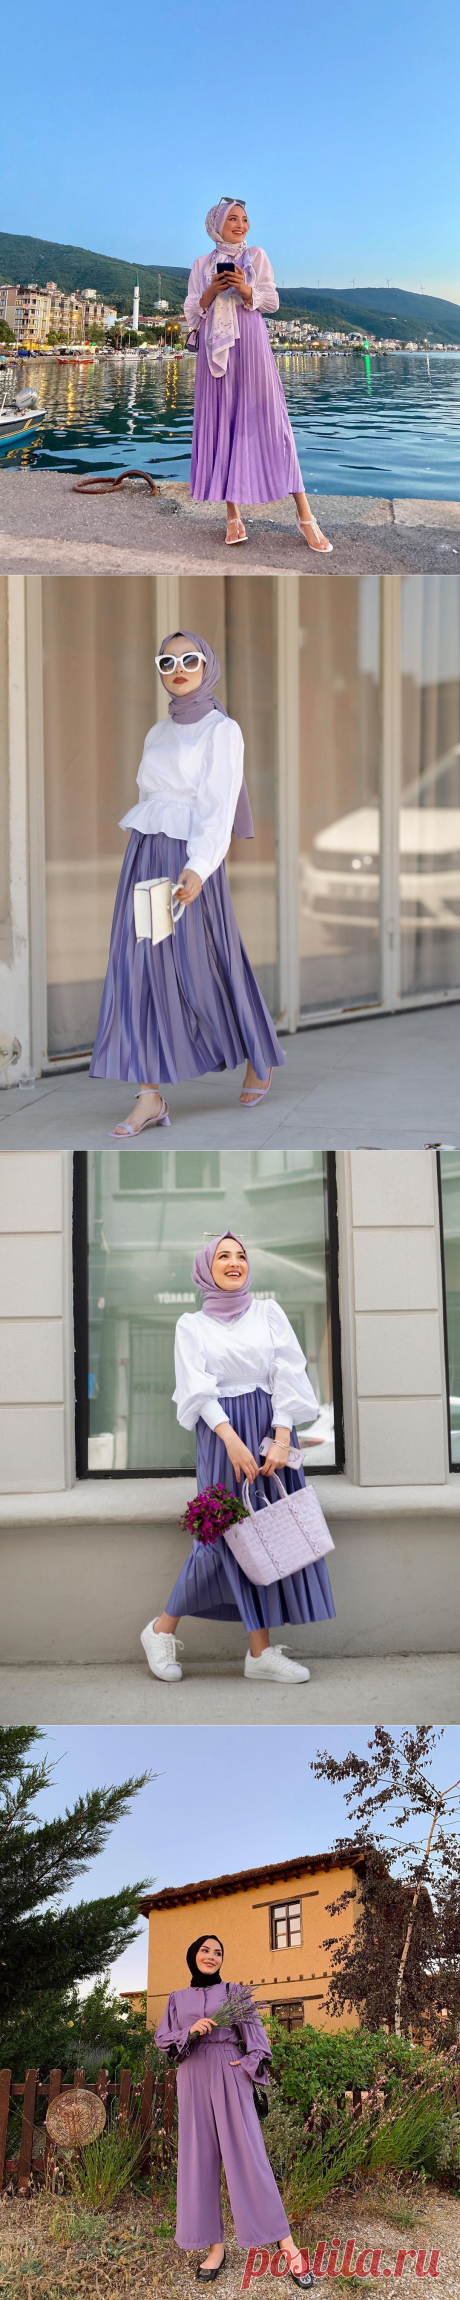 2020 Fashion Trend: Lilac Hijab Outfit Ideas - Hijab-style.com